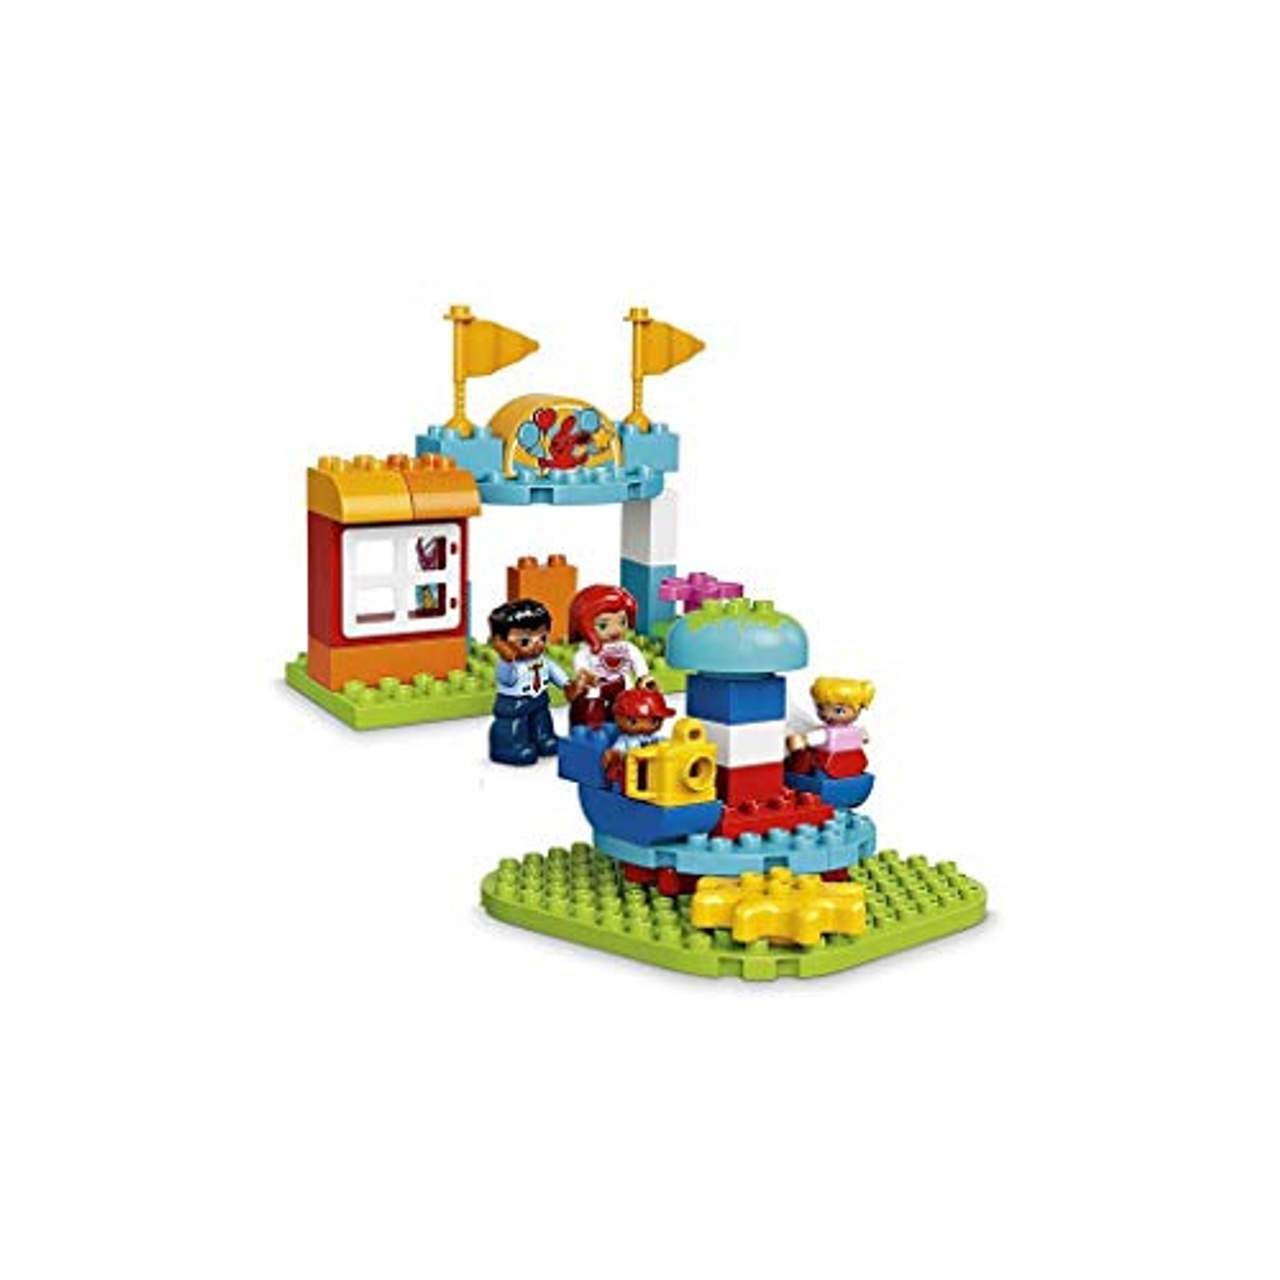 LEGO Duplo Town 10841 Jahrmarkt